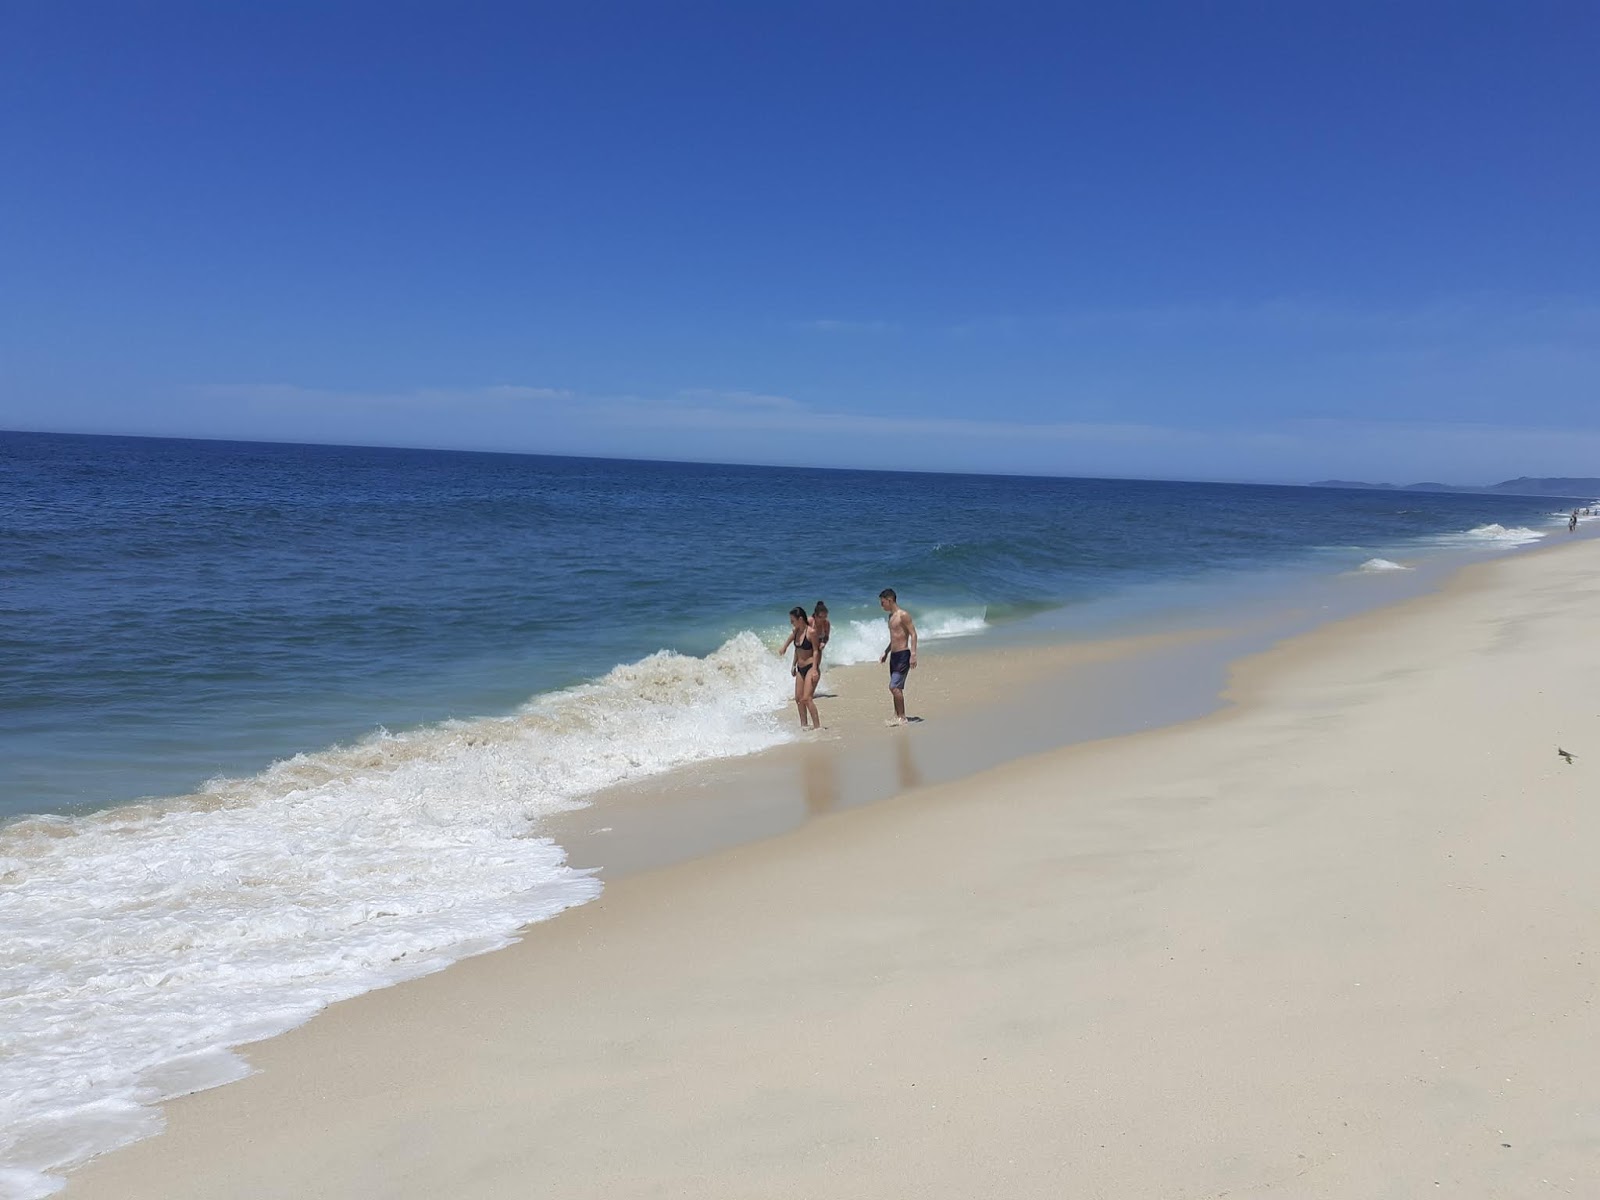 Praia do Boqueirao的照片 带有蓝色纯水表面